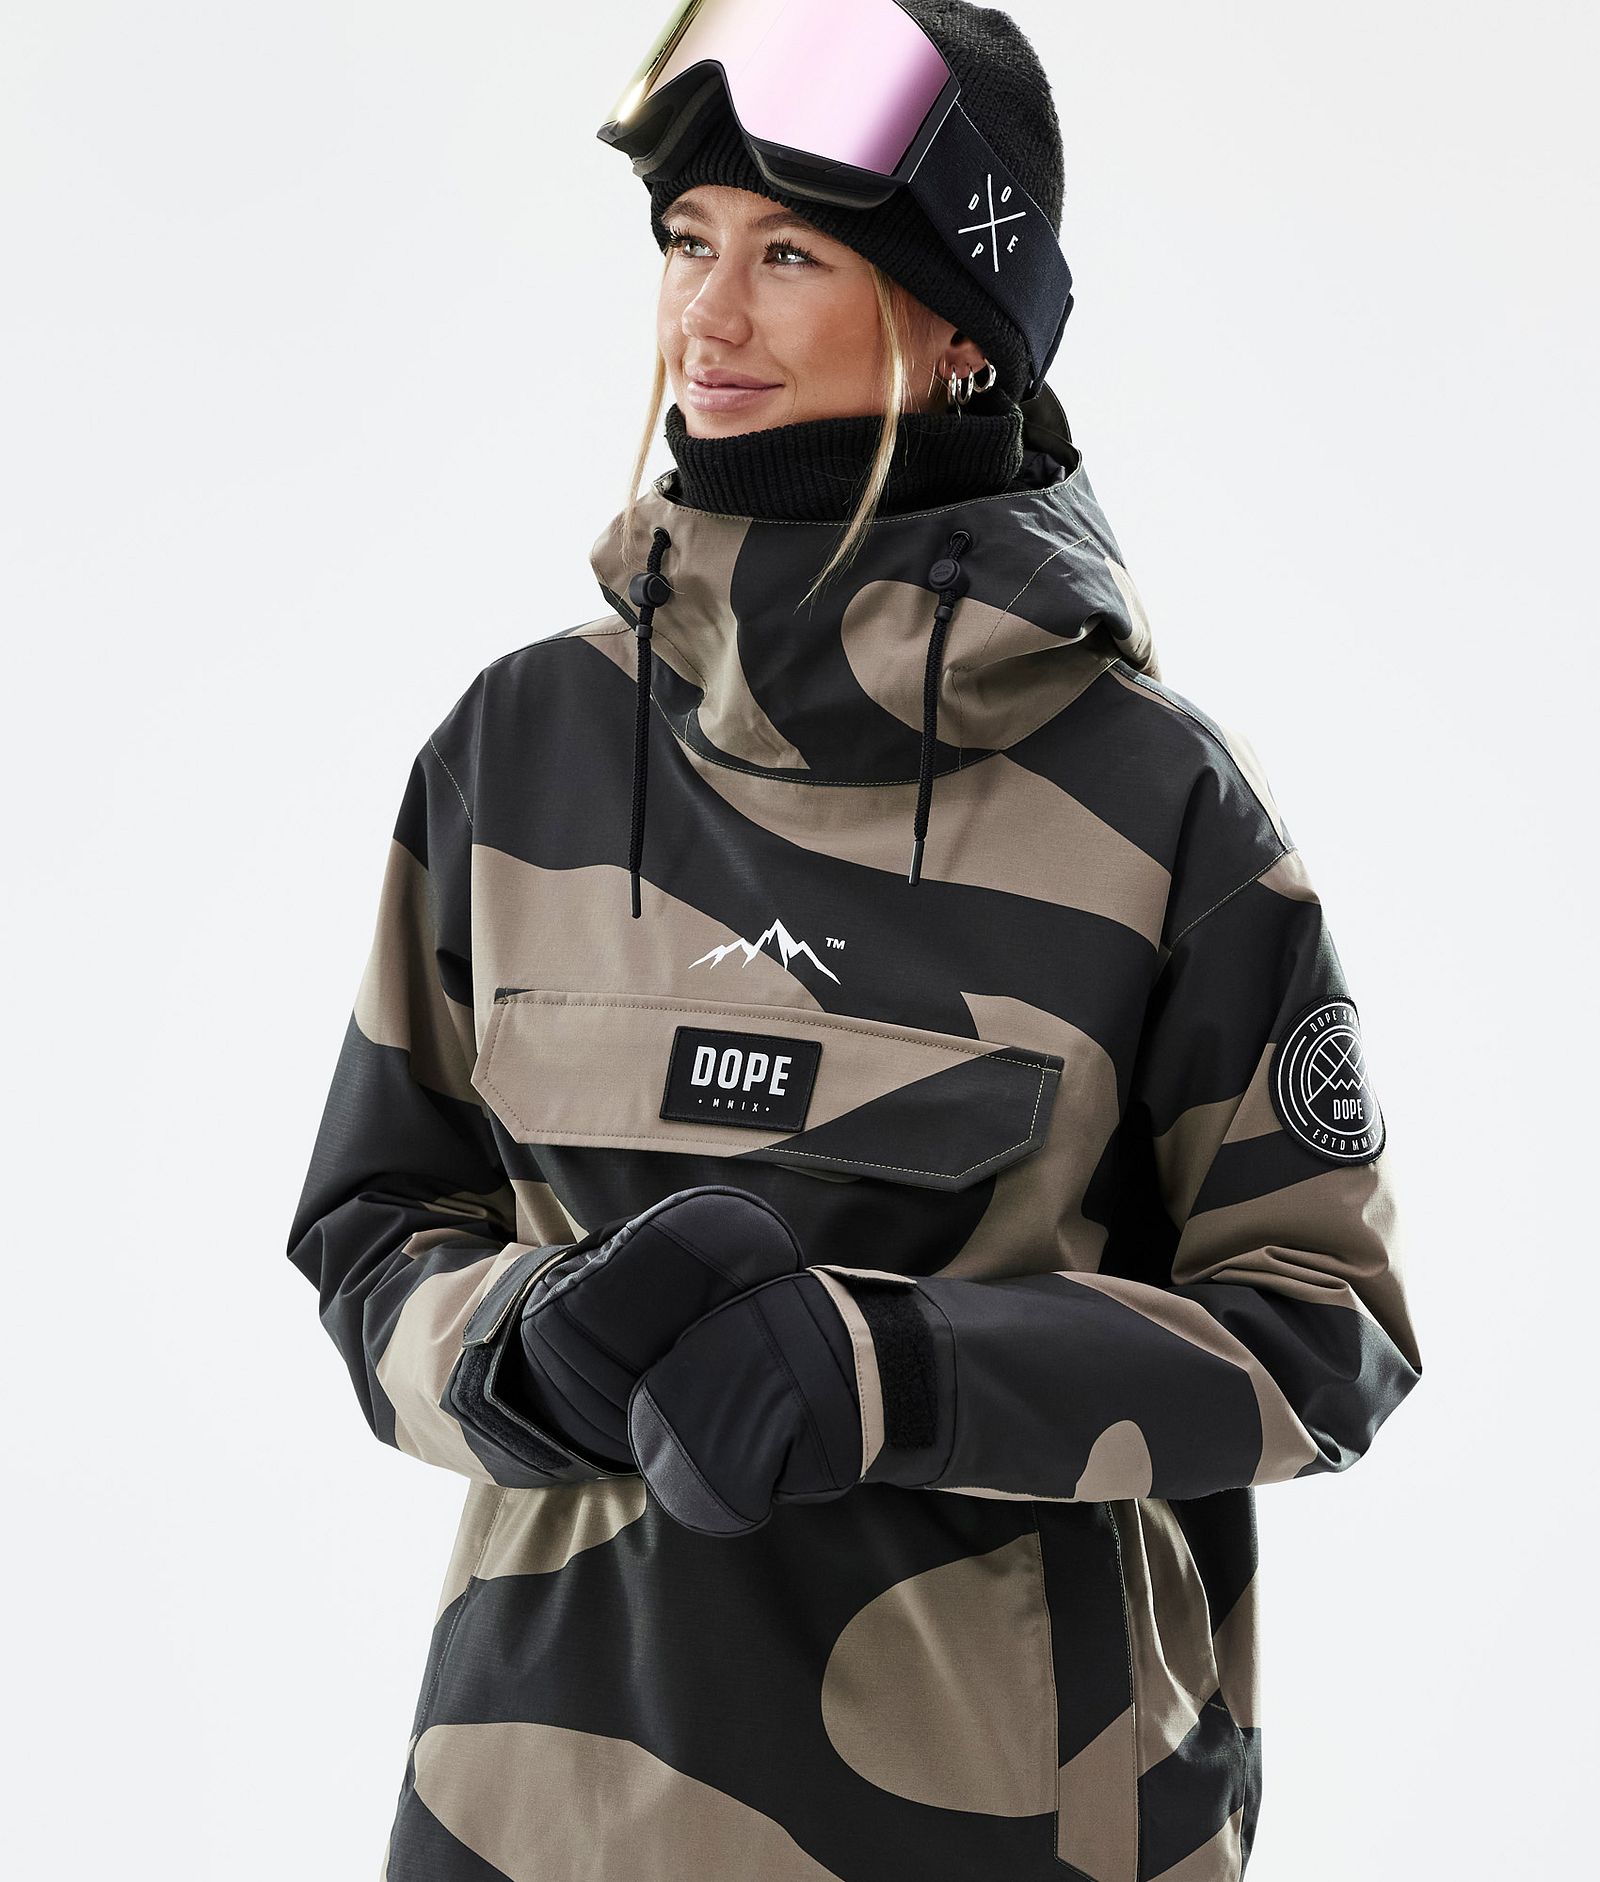 Dope Blizzard W 2022 Snowboard Jacket Women Pangea Walnut